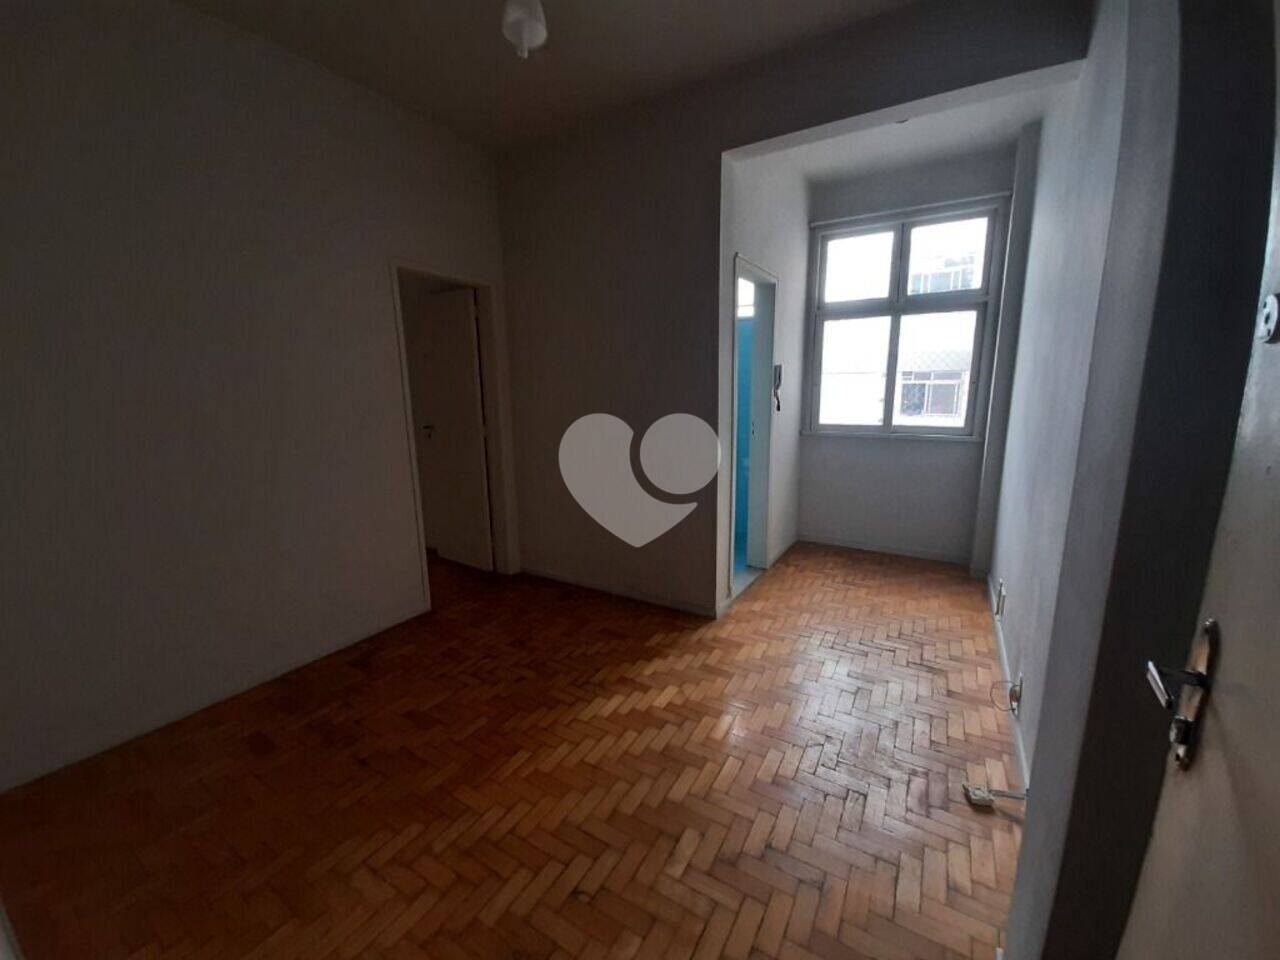 Apartamento com 1 dormitório à venda, 35 m² por R$ 240.000 - Grajaú - Rio de Janeiro/RJ